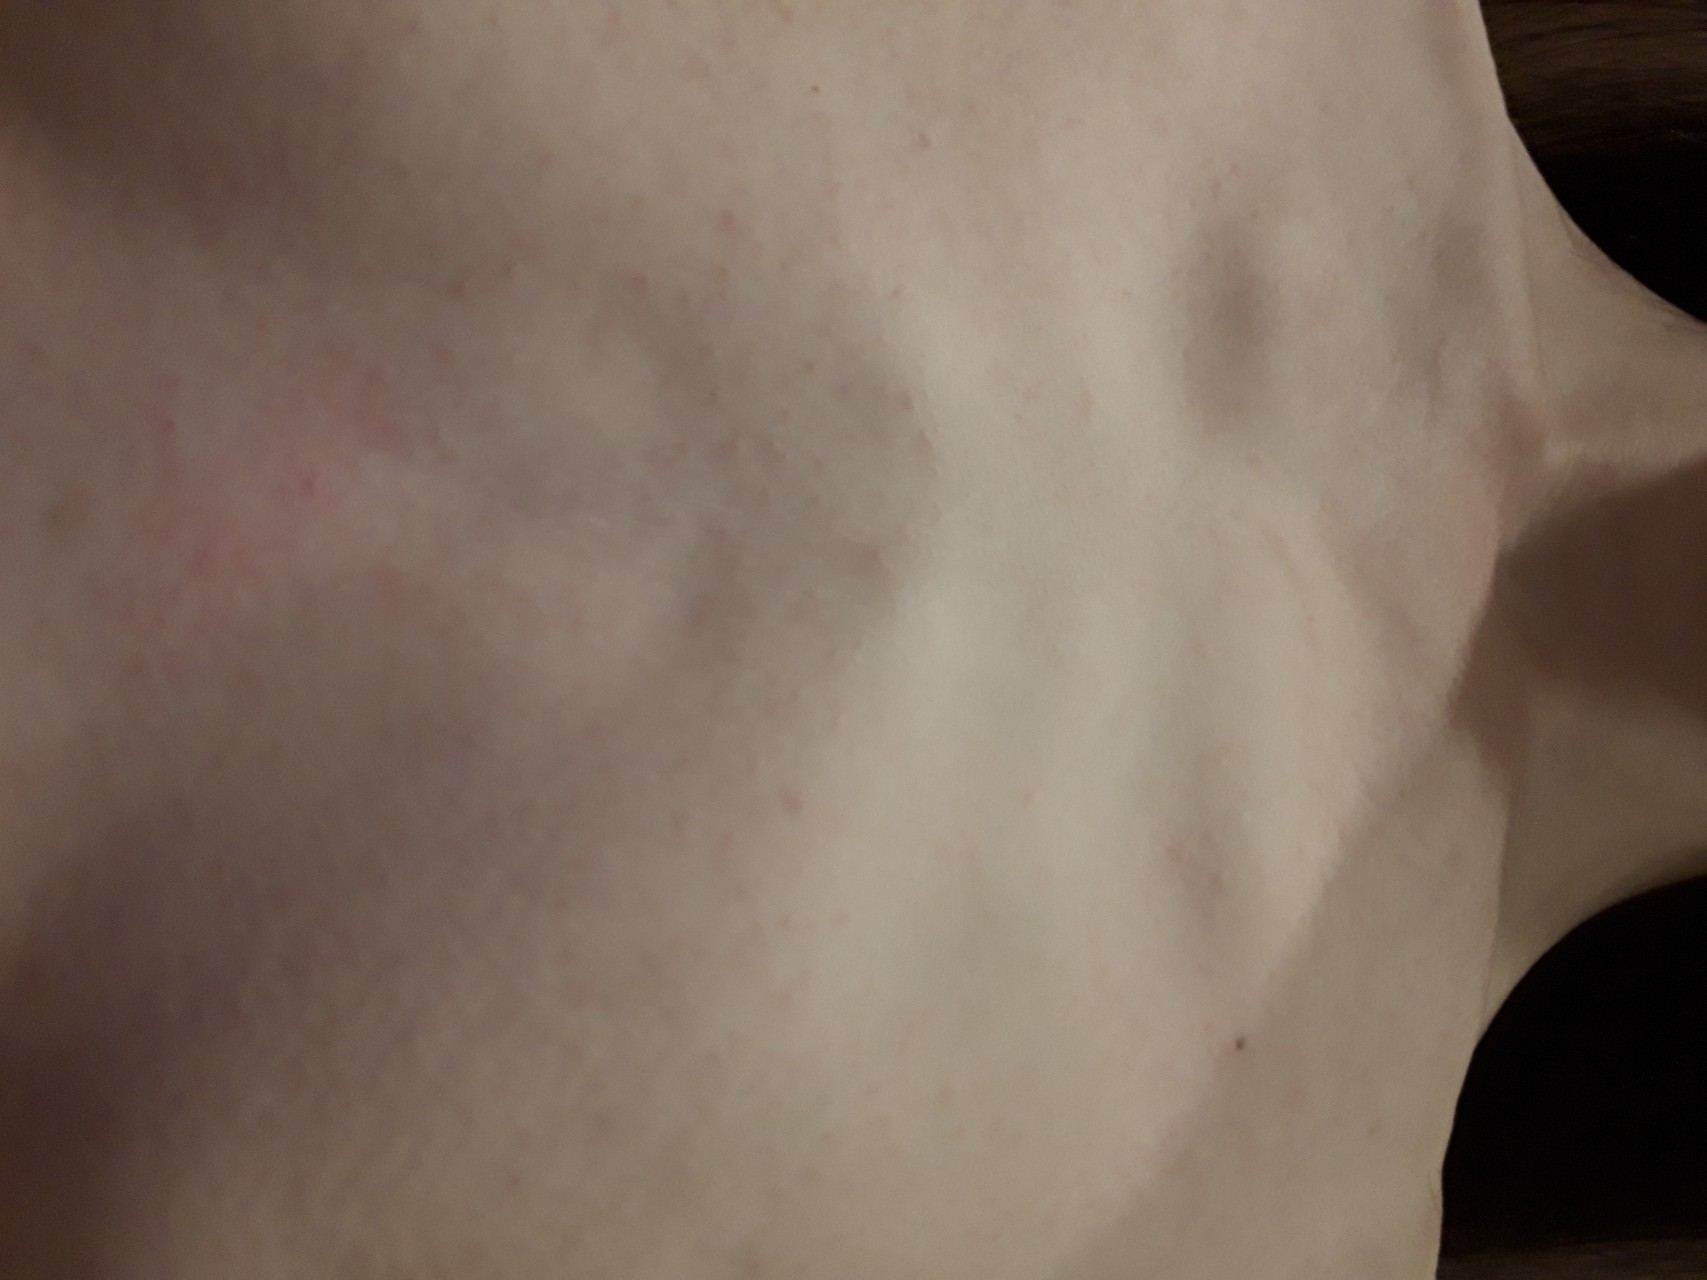 красные высыпания на груди у мужчин фото 59